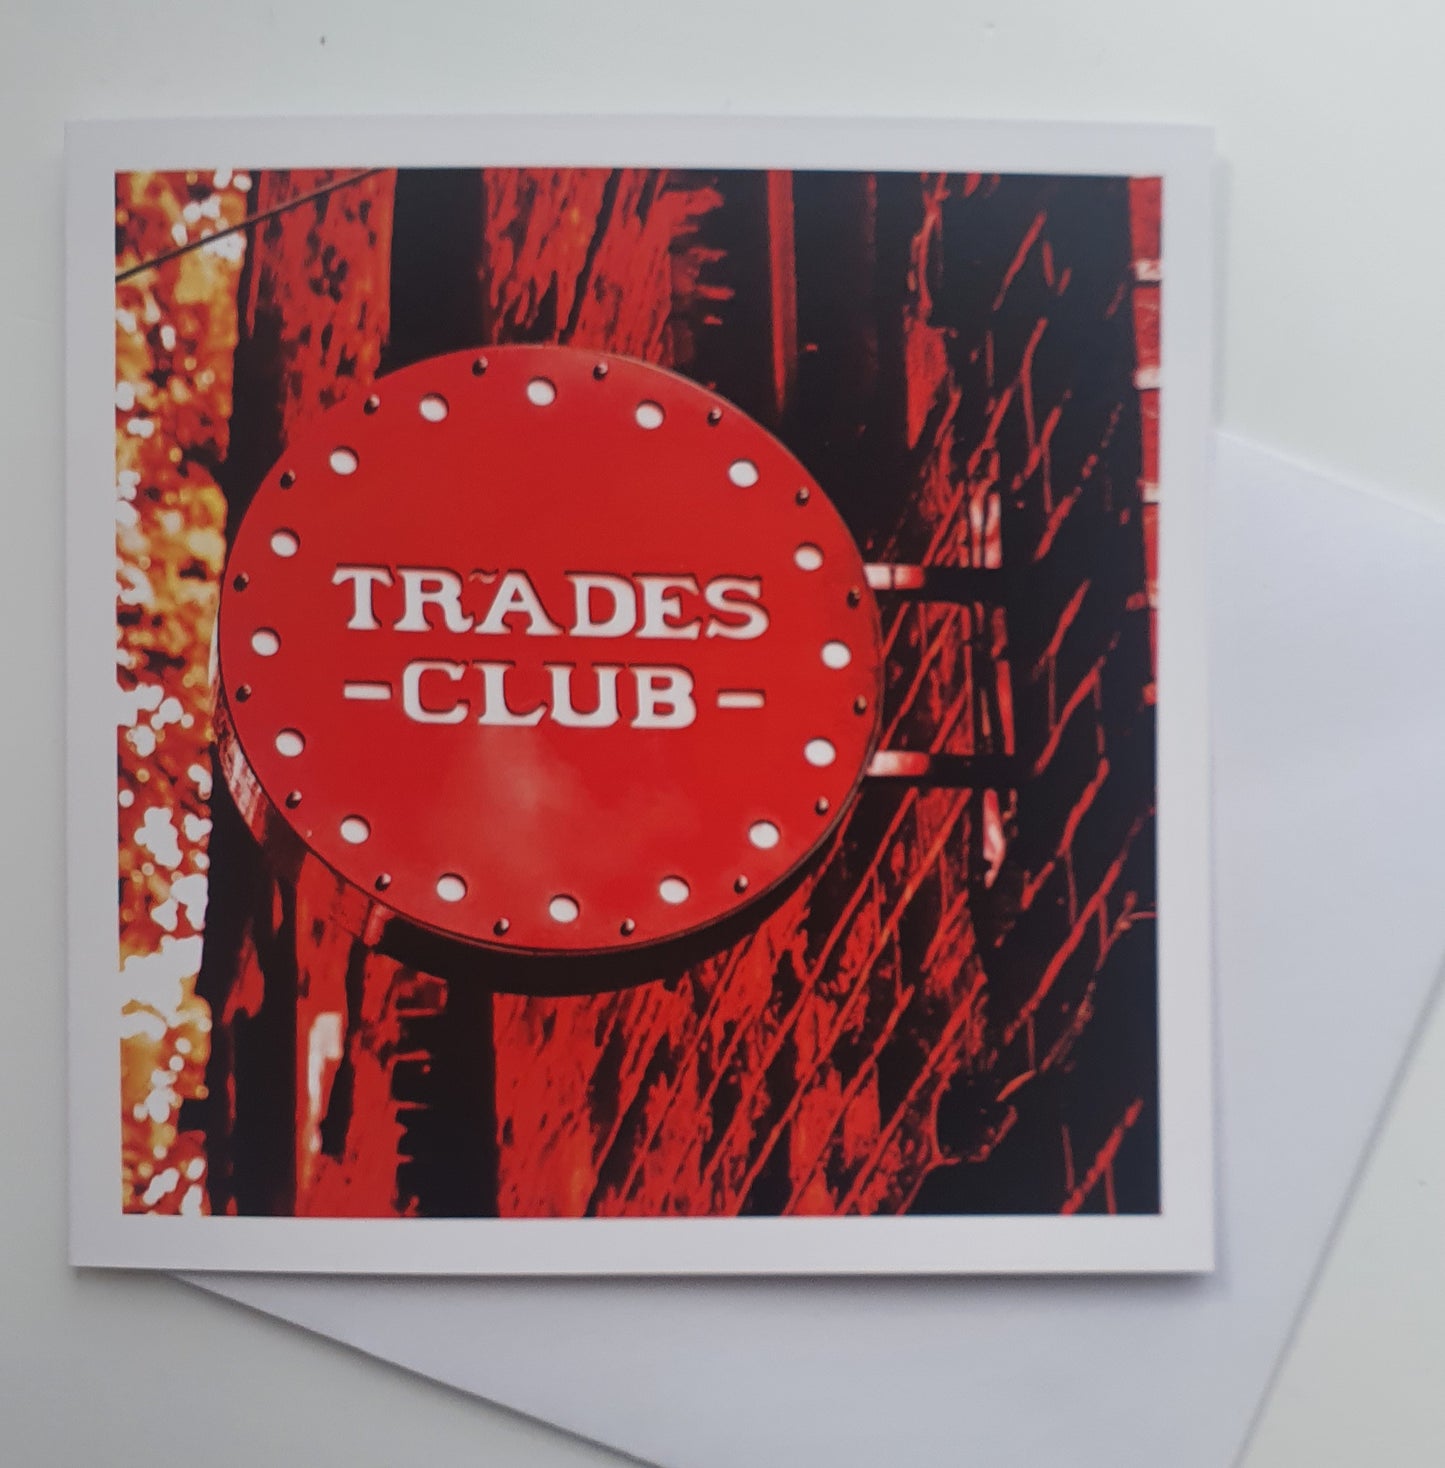 Trades club card